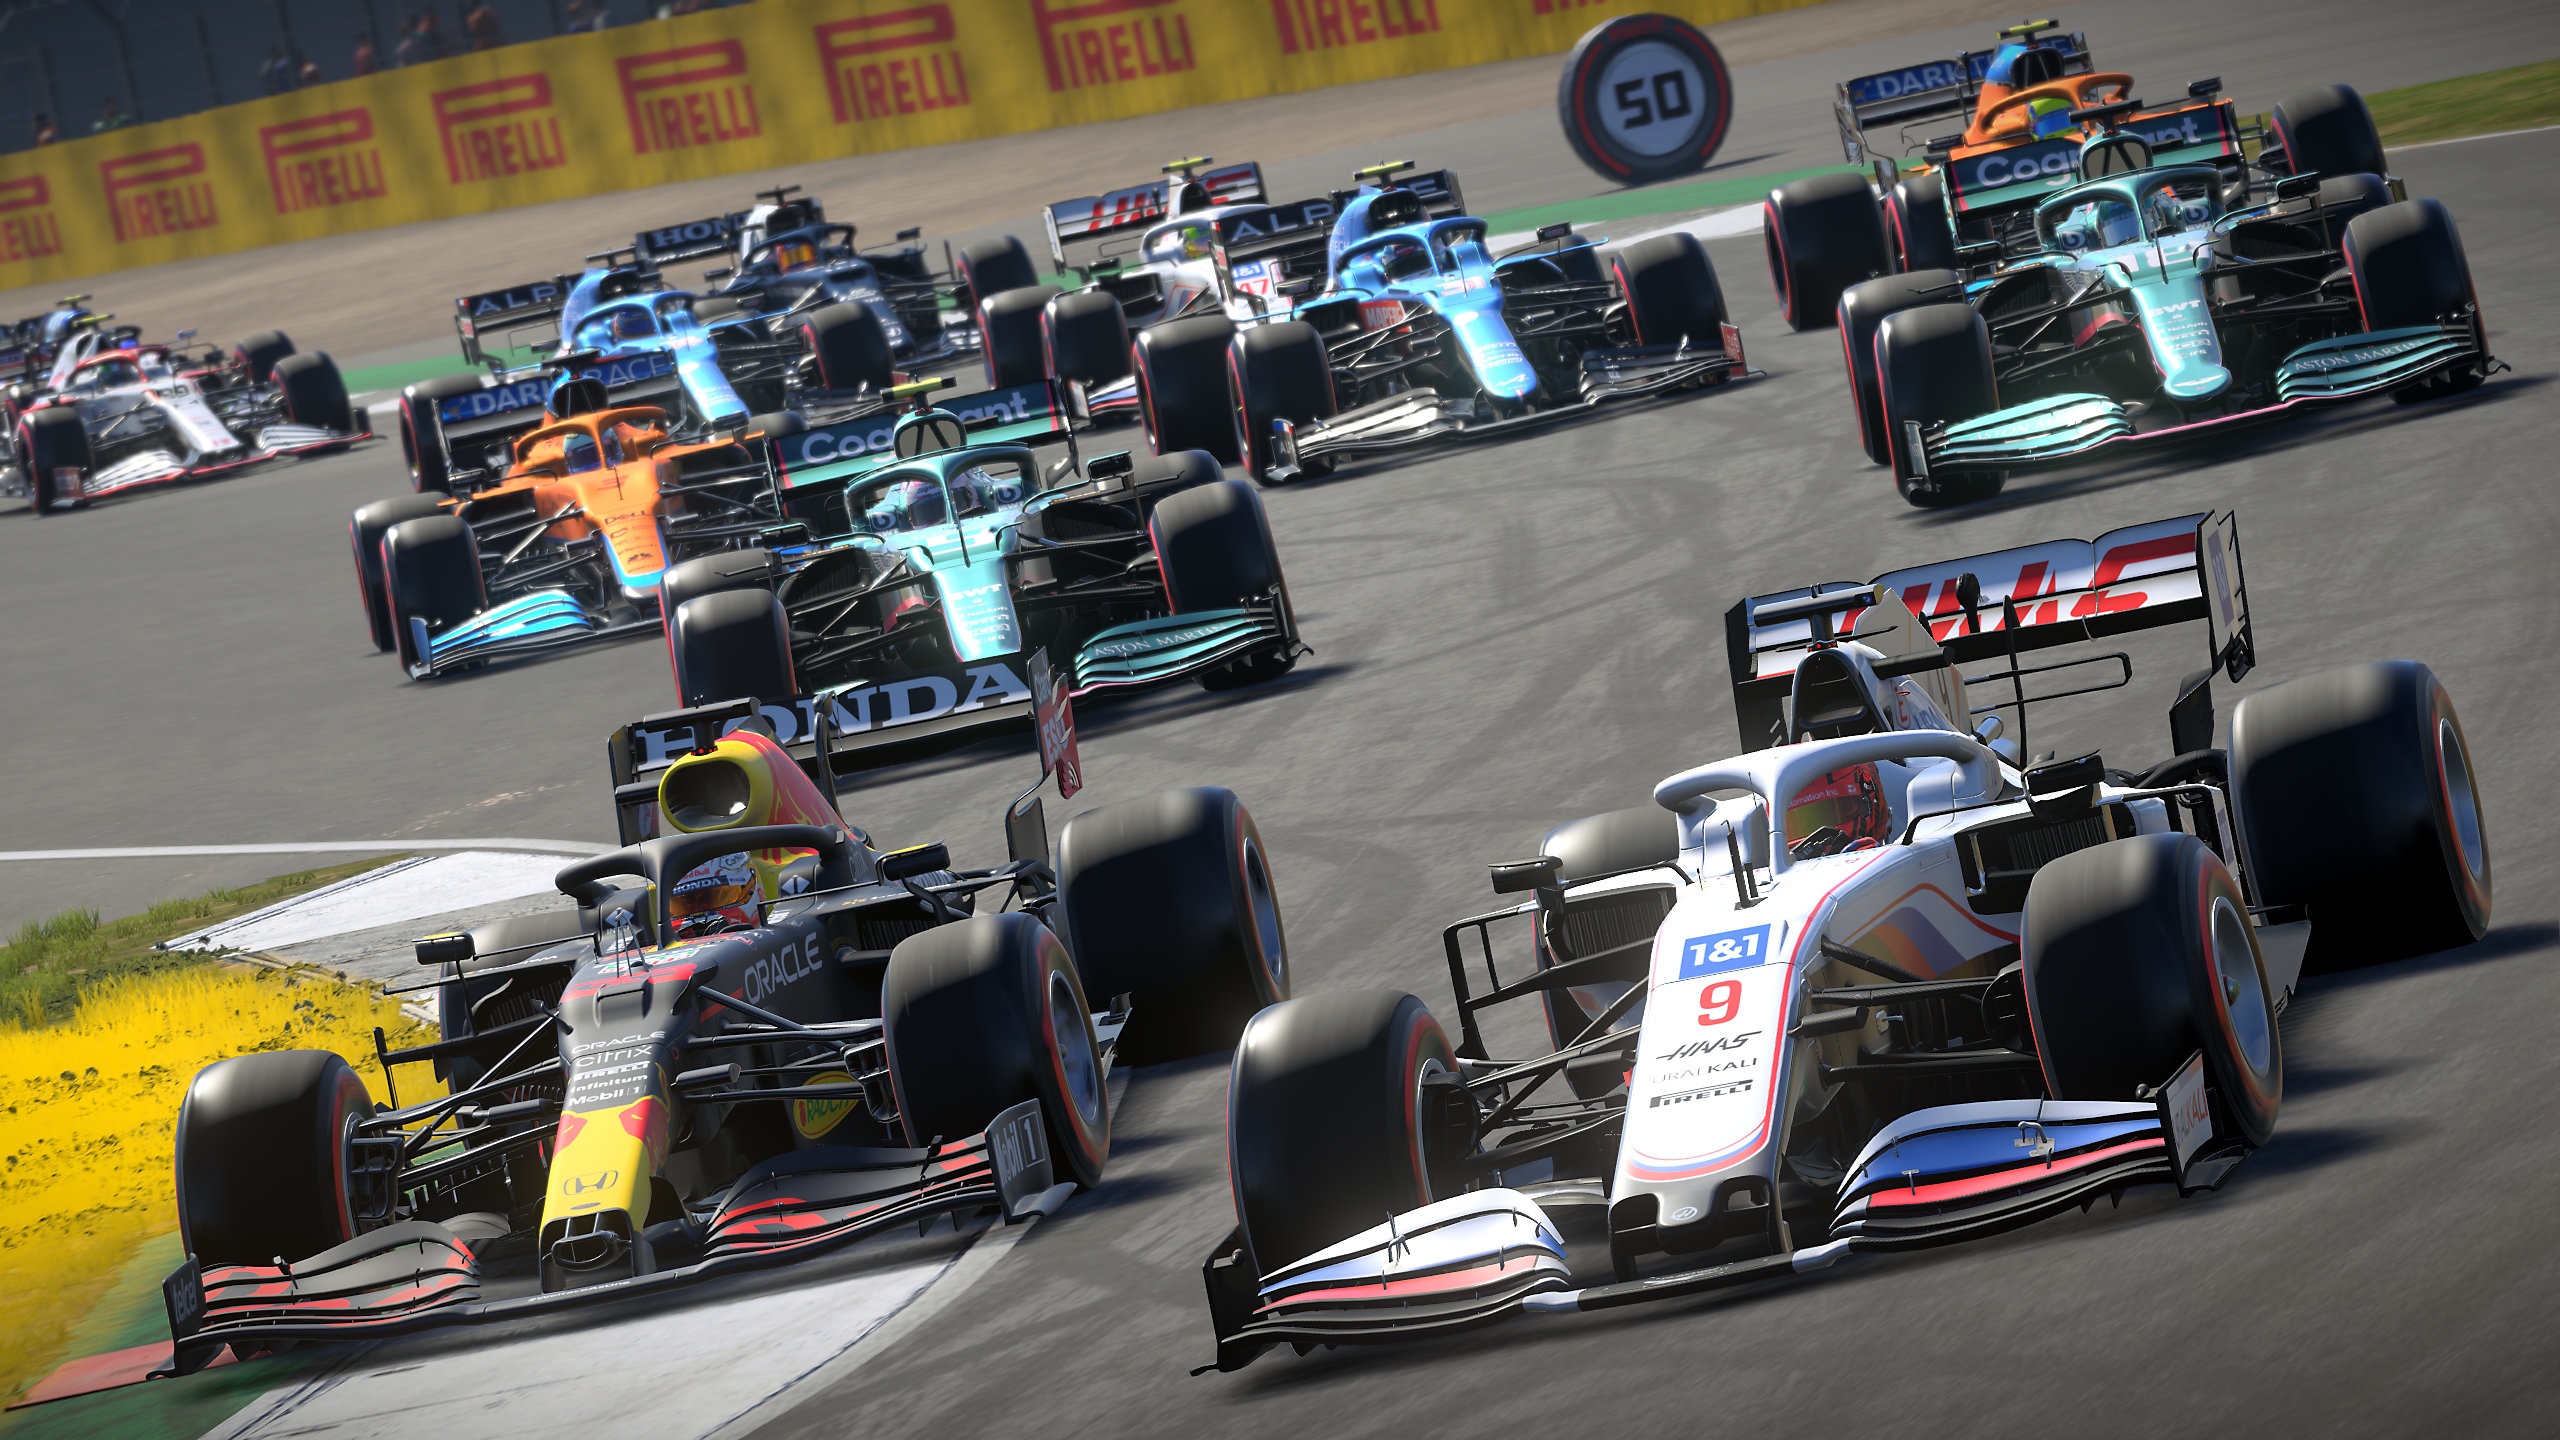 Captura de pantalla del juego F1 2021